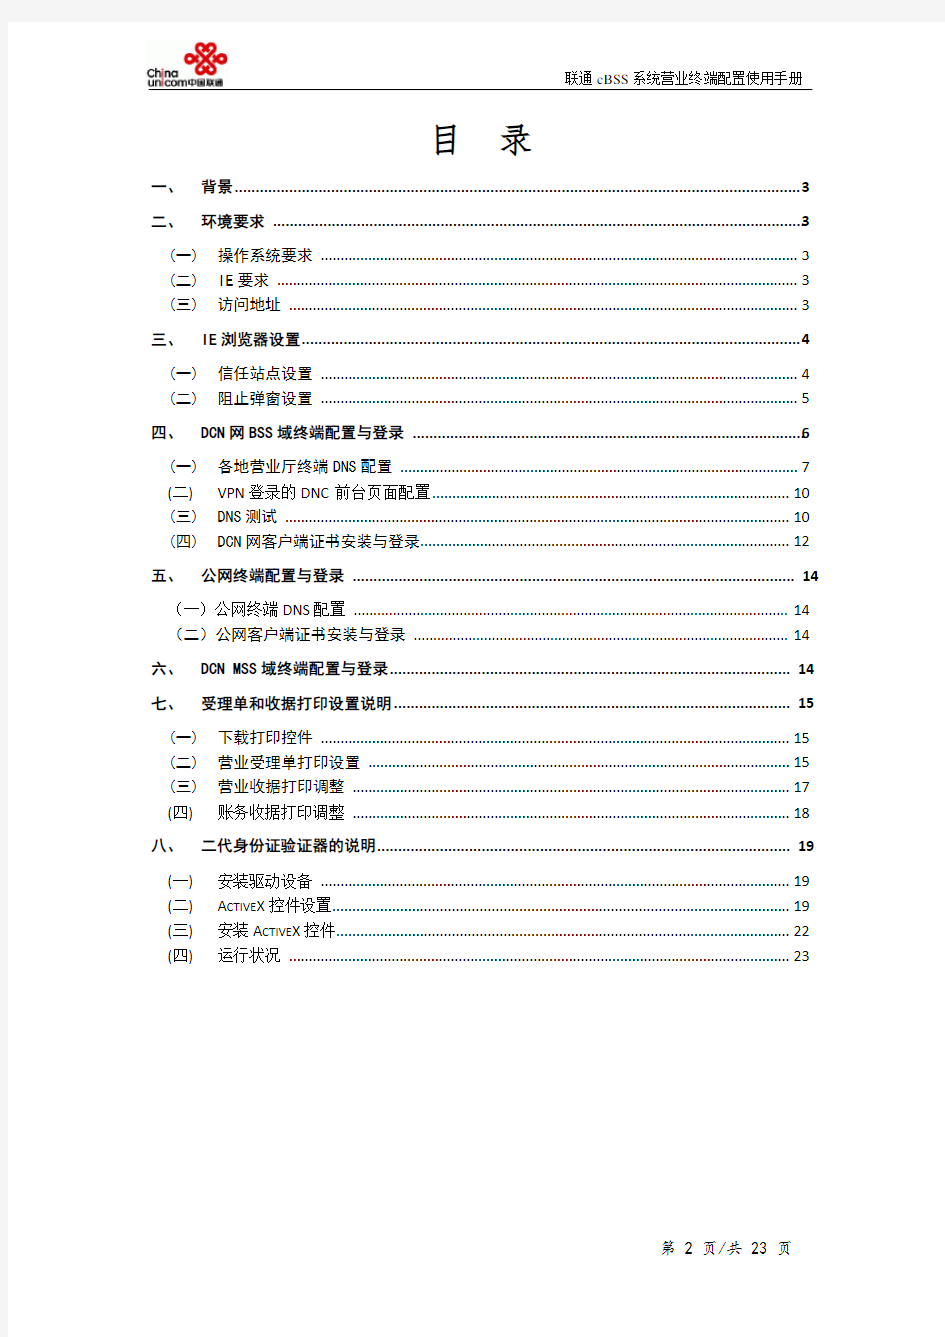 中国联通cBSS系统_终端应用环境配置手册V5.8